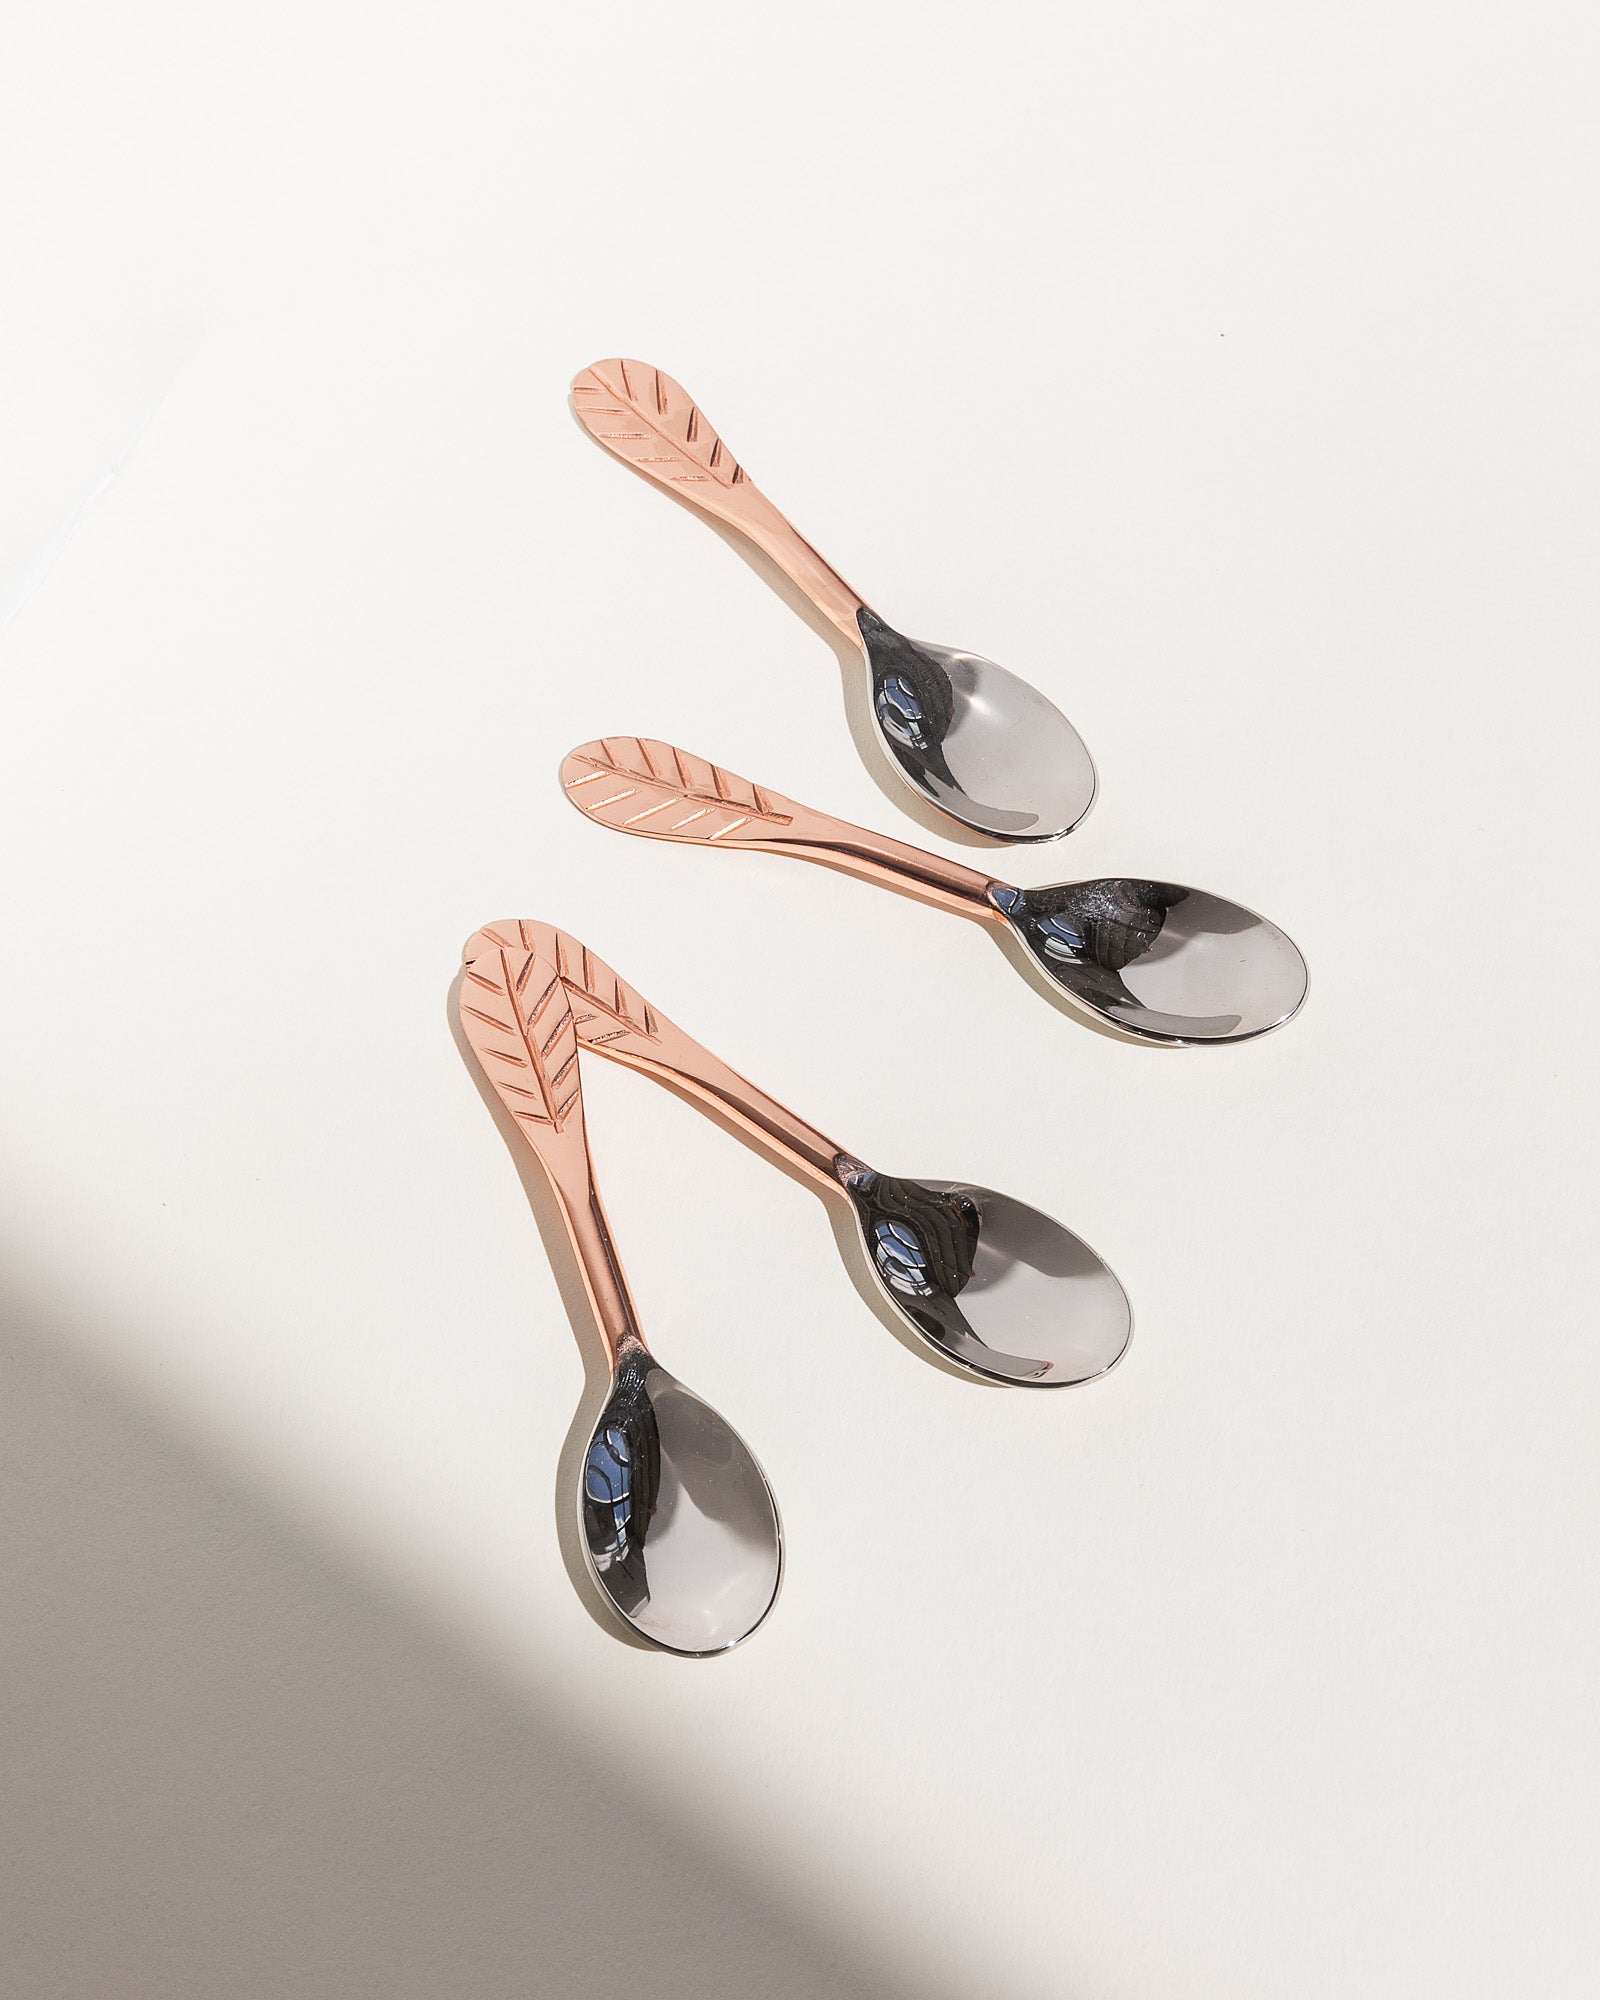 Sprig Tea Spoon Set - Trades of Hope 